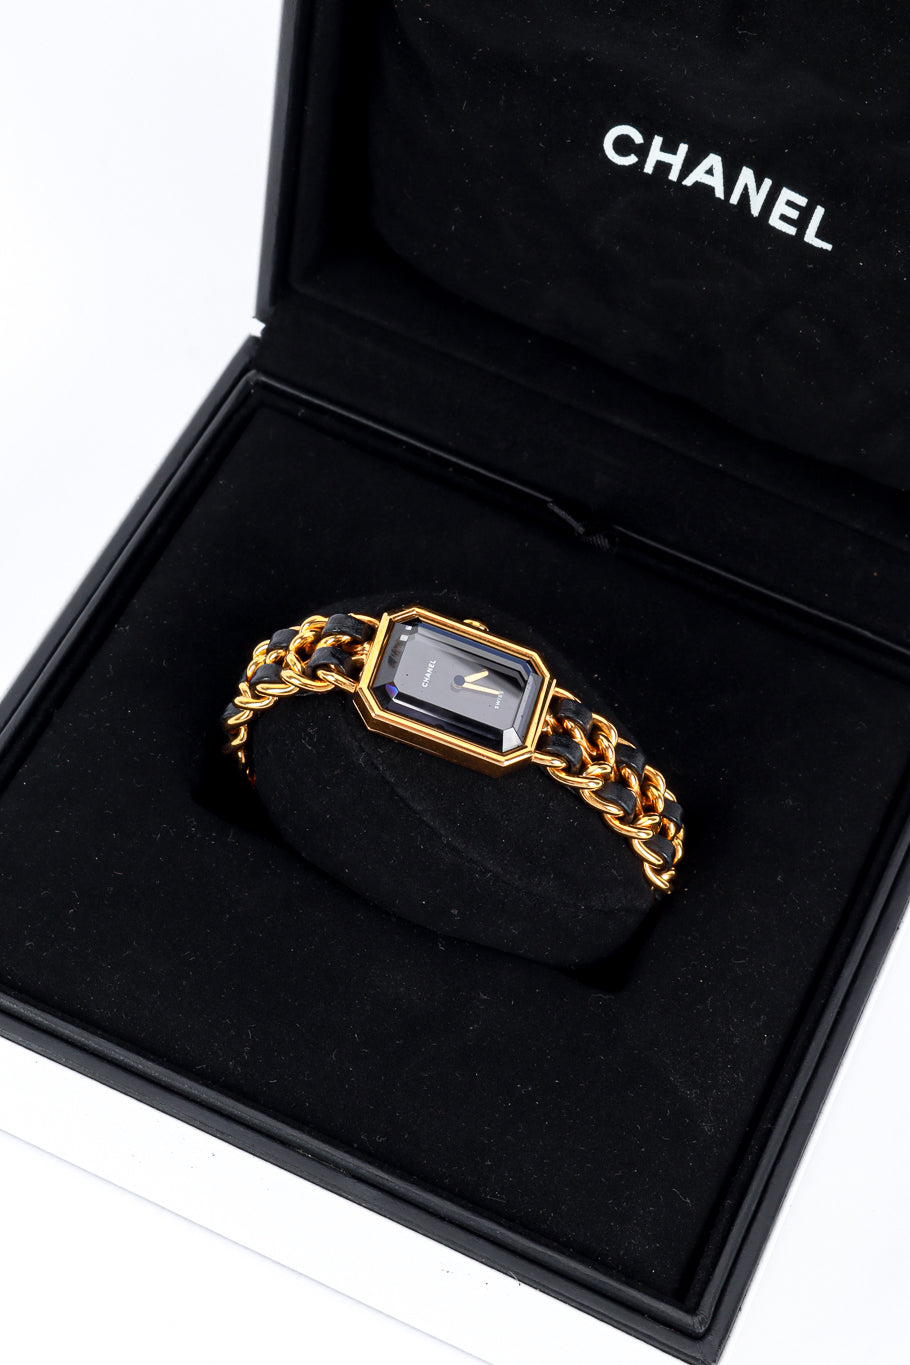 Premier Chain Bracelet Watch by Chanel in box @RECESS LA